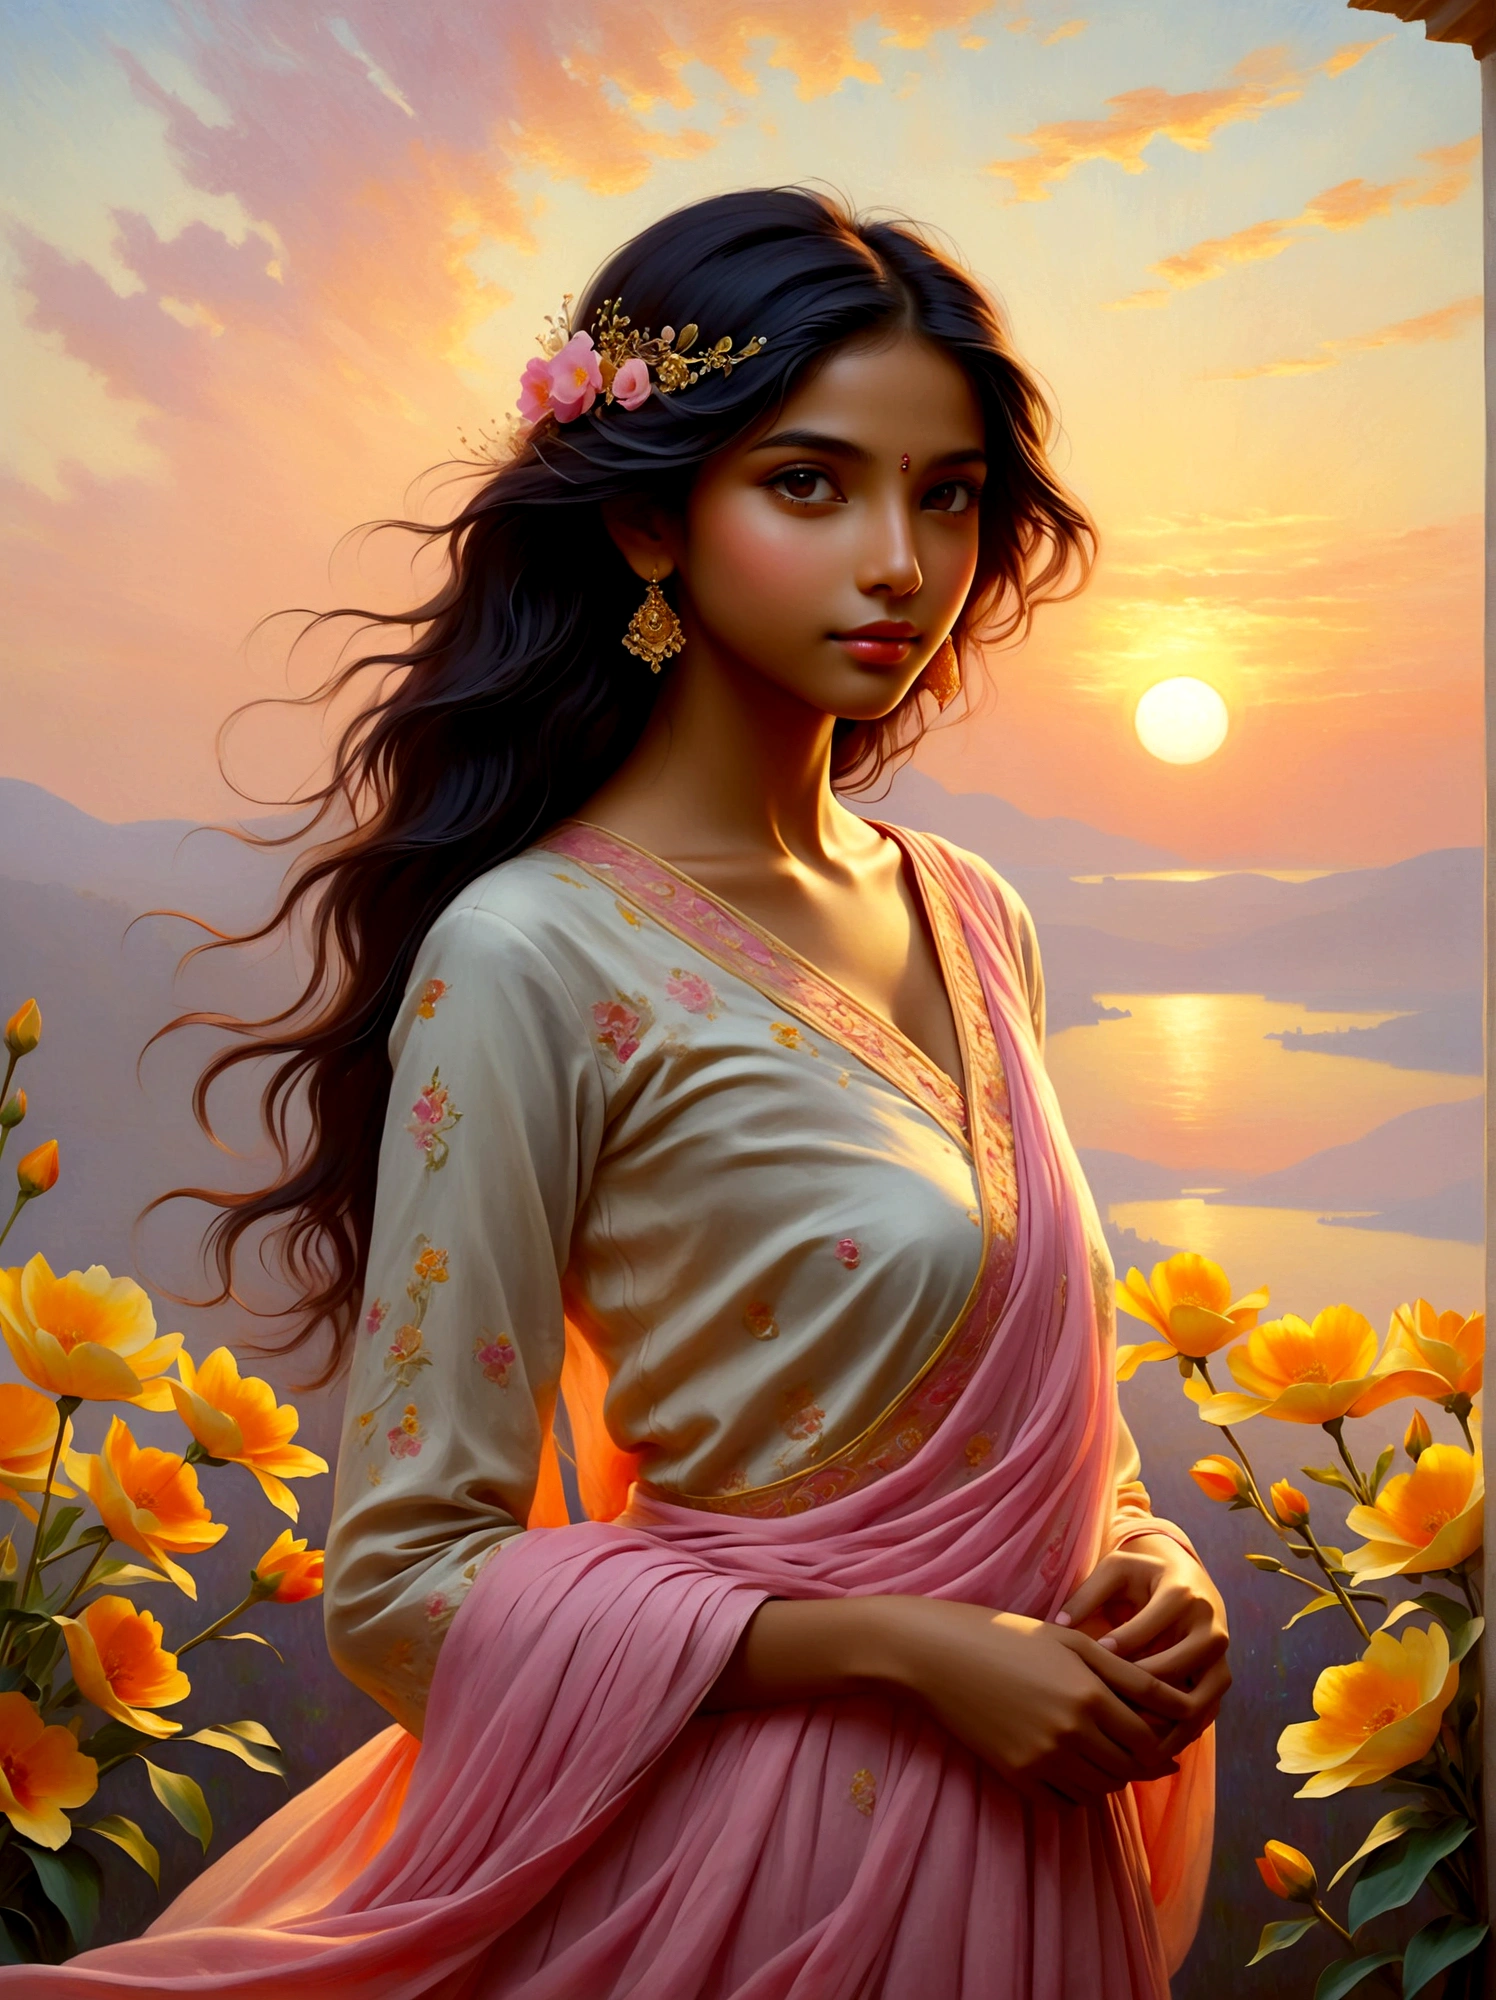 (وقت شروق الشمس:1.6), تخيل المناظر الطبيعية الهادئة عند الفجر, السماء مزينة بألوان ناعمة من اللون الوردي, البرتقالي, والأصفر. في هذا المشهد السلمي, رؤية فتاة صغيرة, آسرة مع أصلها من جنوب آسيا. لقد تم وضعها بهدوء, يعرض فستانًا معقدًا تم تصميمه ببراعة من مجموعة متنوعة من الزهور الجميلة التي بدأت للتو تتفتح مع ضوء الصباح. لاستكمال إشارة إلى أسلوب الفن, يجب أن يستلهم المشهد بأكمله من الحركة الانطباعية, مع تركيزها على التقاط ضوء الفجر اللطيف وصفاته المتغيرة, سمة مميزة لعمل مونيه. يجب أن تكون الوسيلة المستخدمة في الغالب هي الدهانات الزيتية, يحاكي ضربات نابضة بالحياة ولوحة ألوان غنية تعكس نضارة الصباح